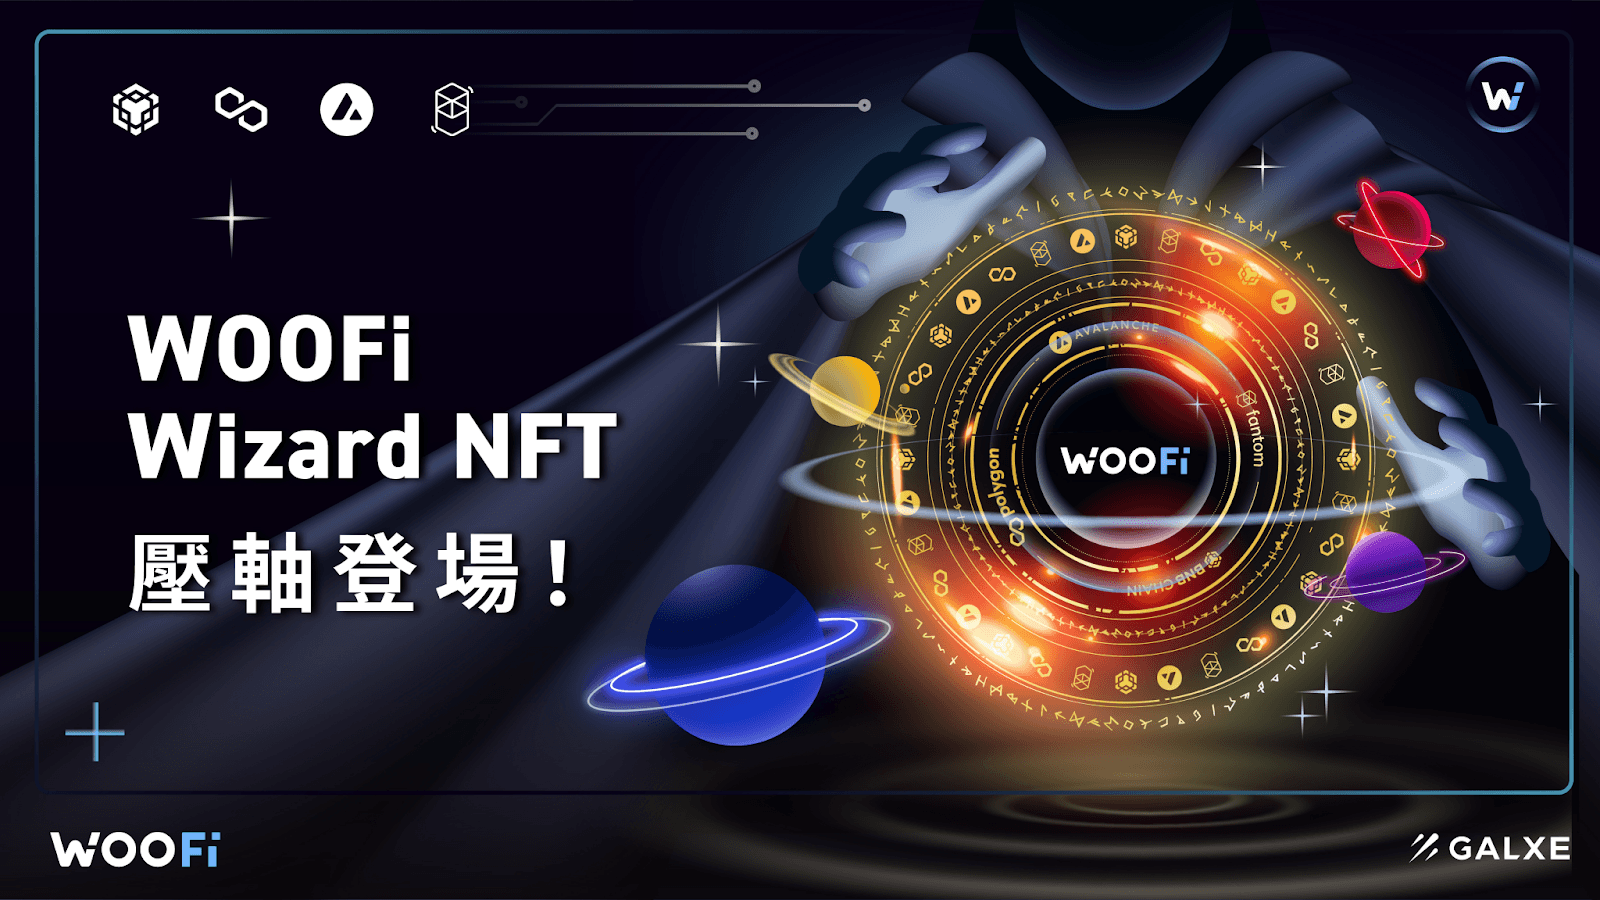 WOOFi Wizard NFT 壓軸登場